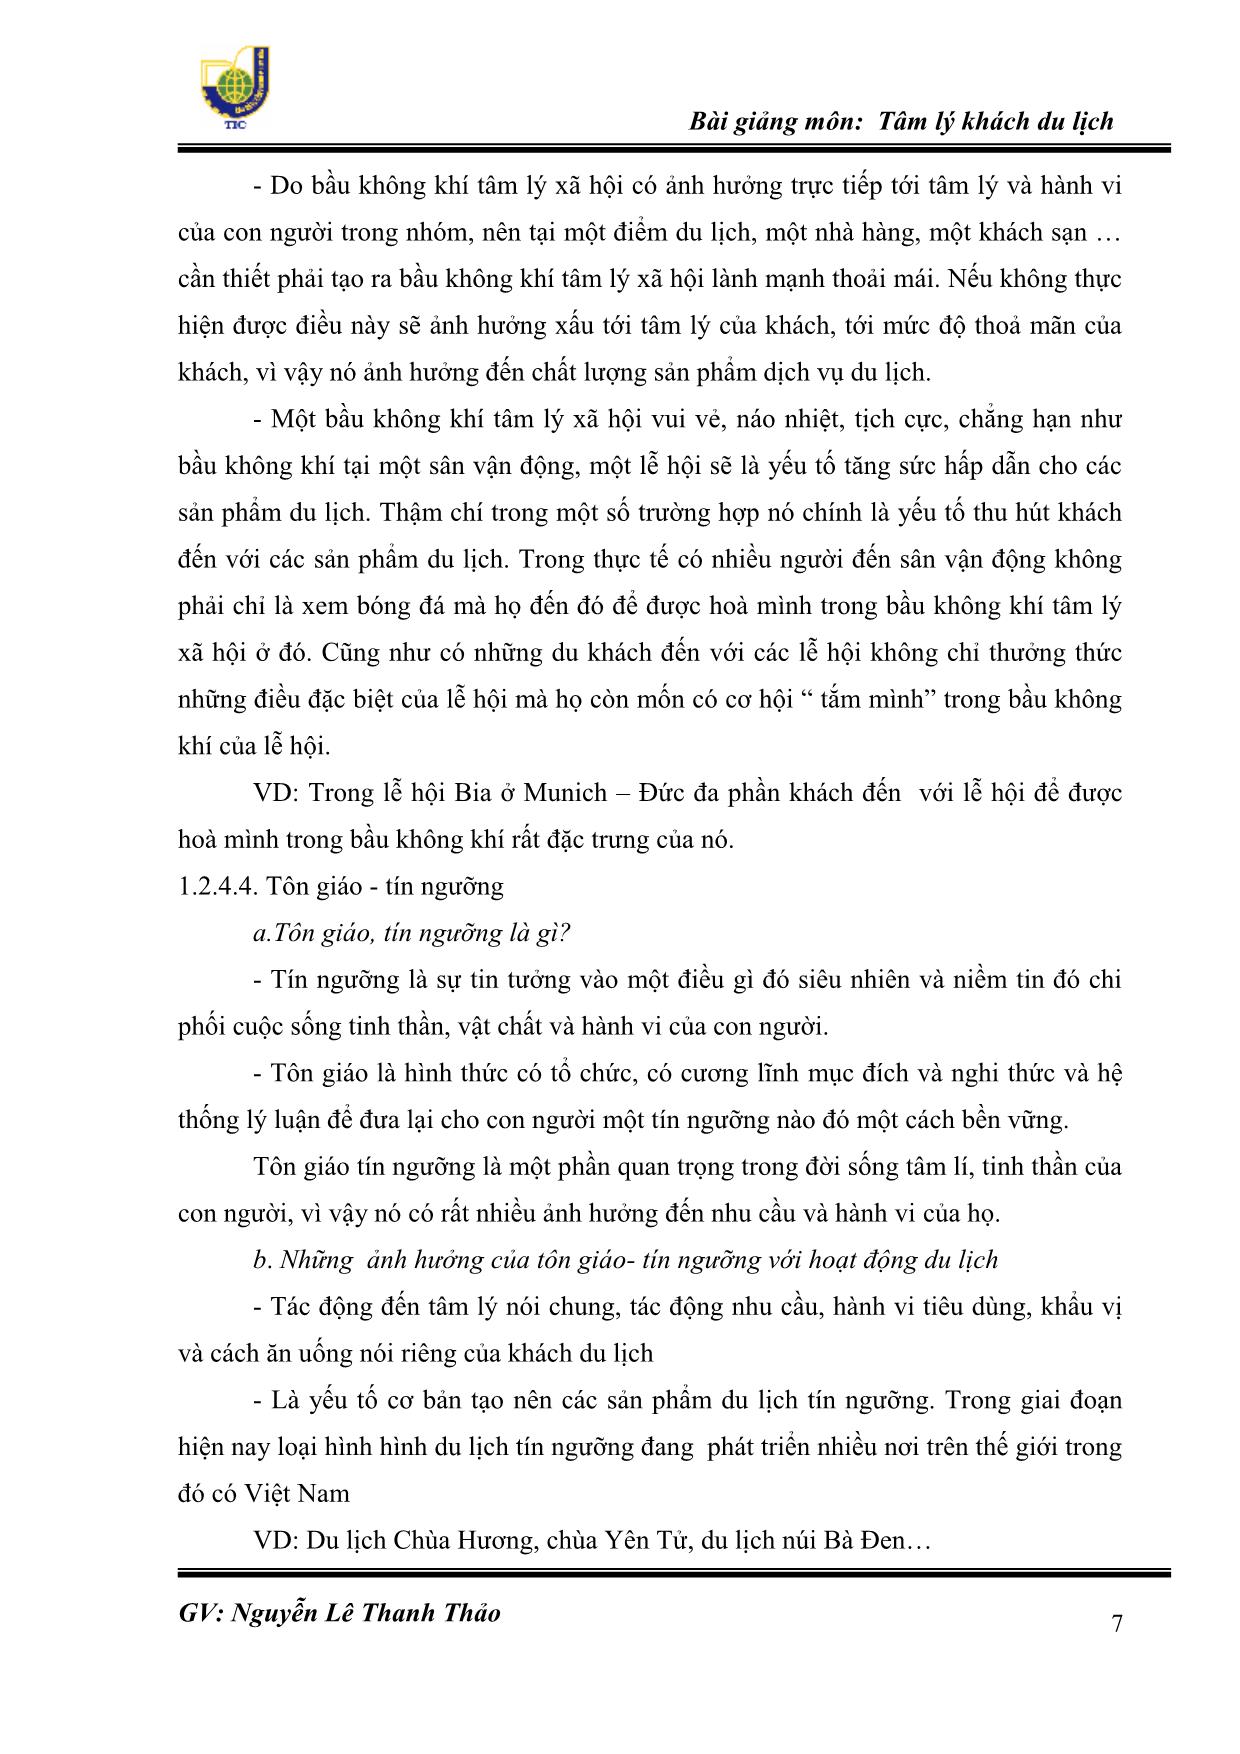 Bài giảng Tâm lý khách du lịch - Nguyễn Lê Thanh Thảo trang 7